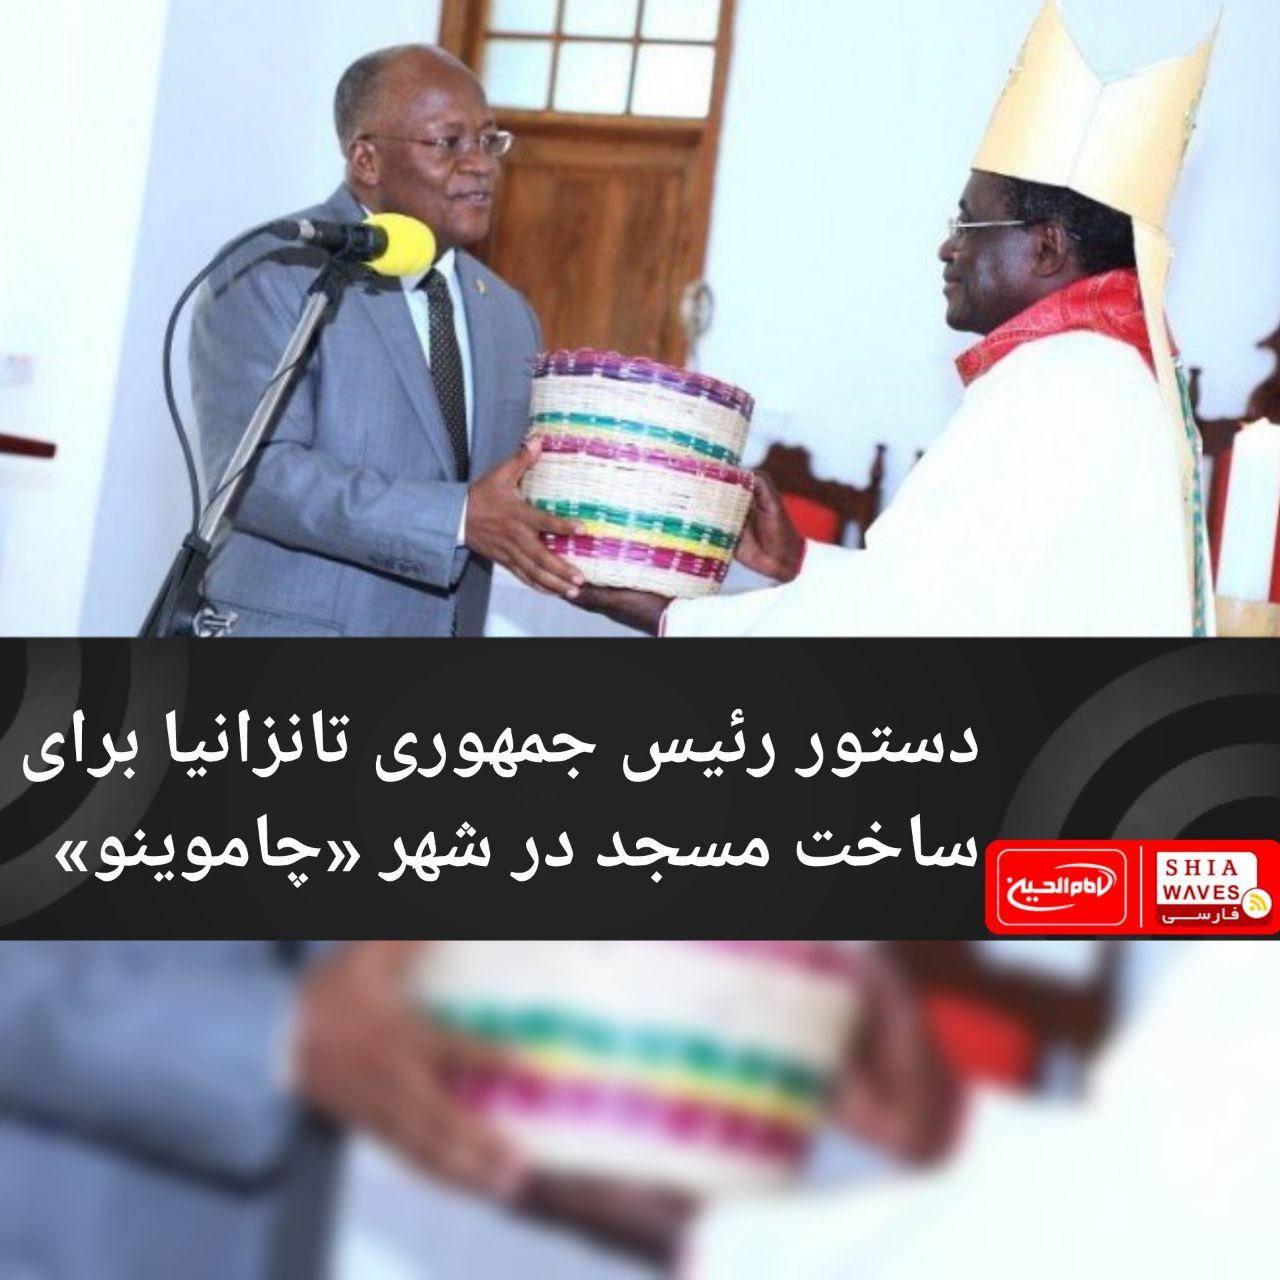 تصویر دستور رئیس جمهوری تانزانیا برای ساخت مسجد در شهر «چاموینو»